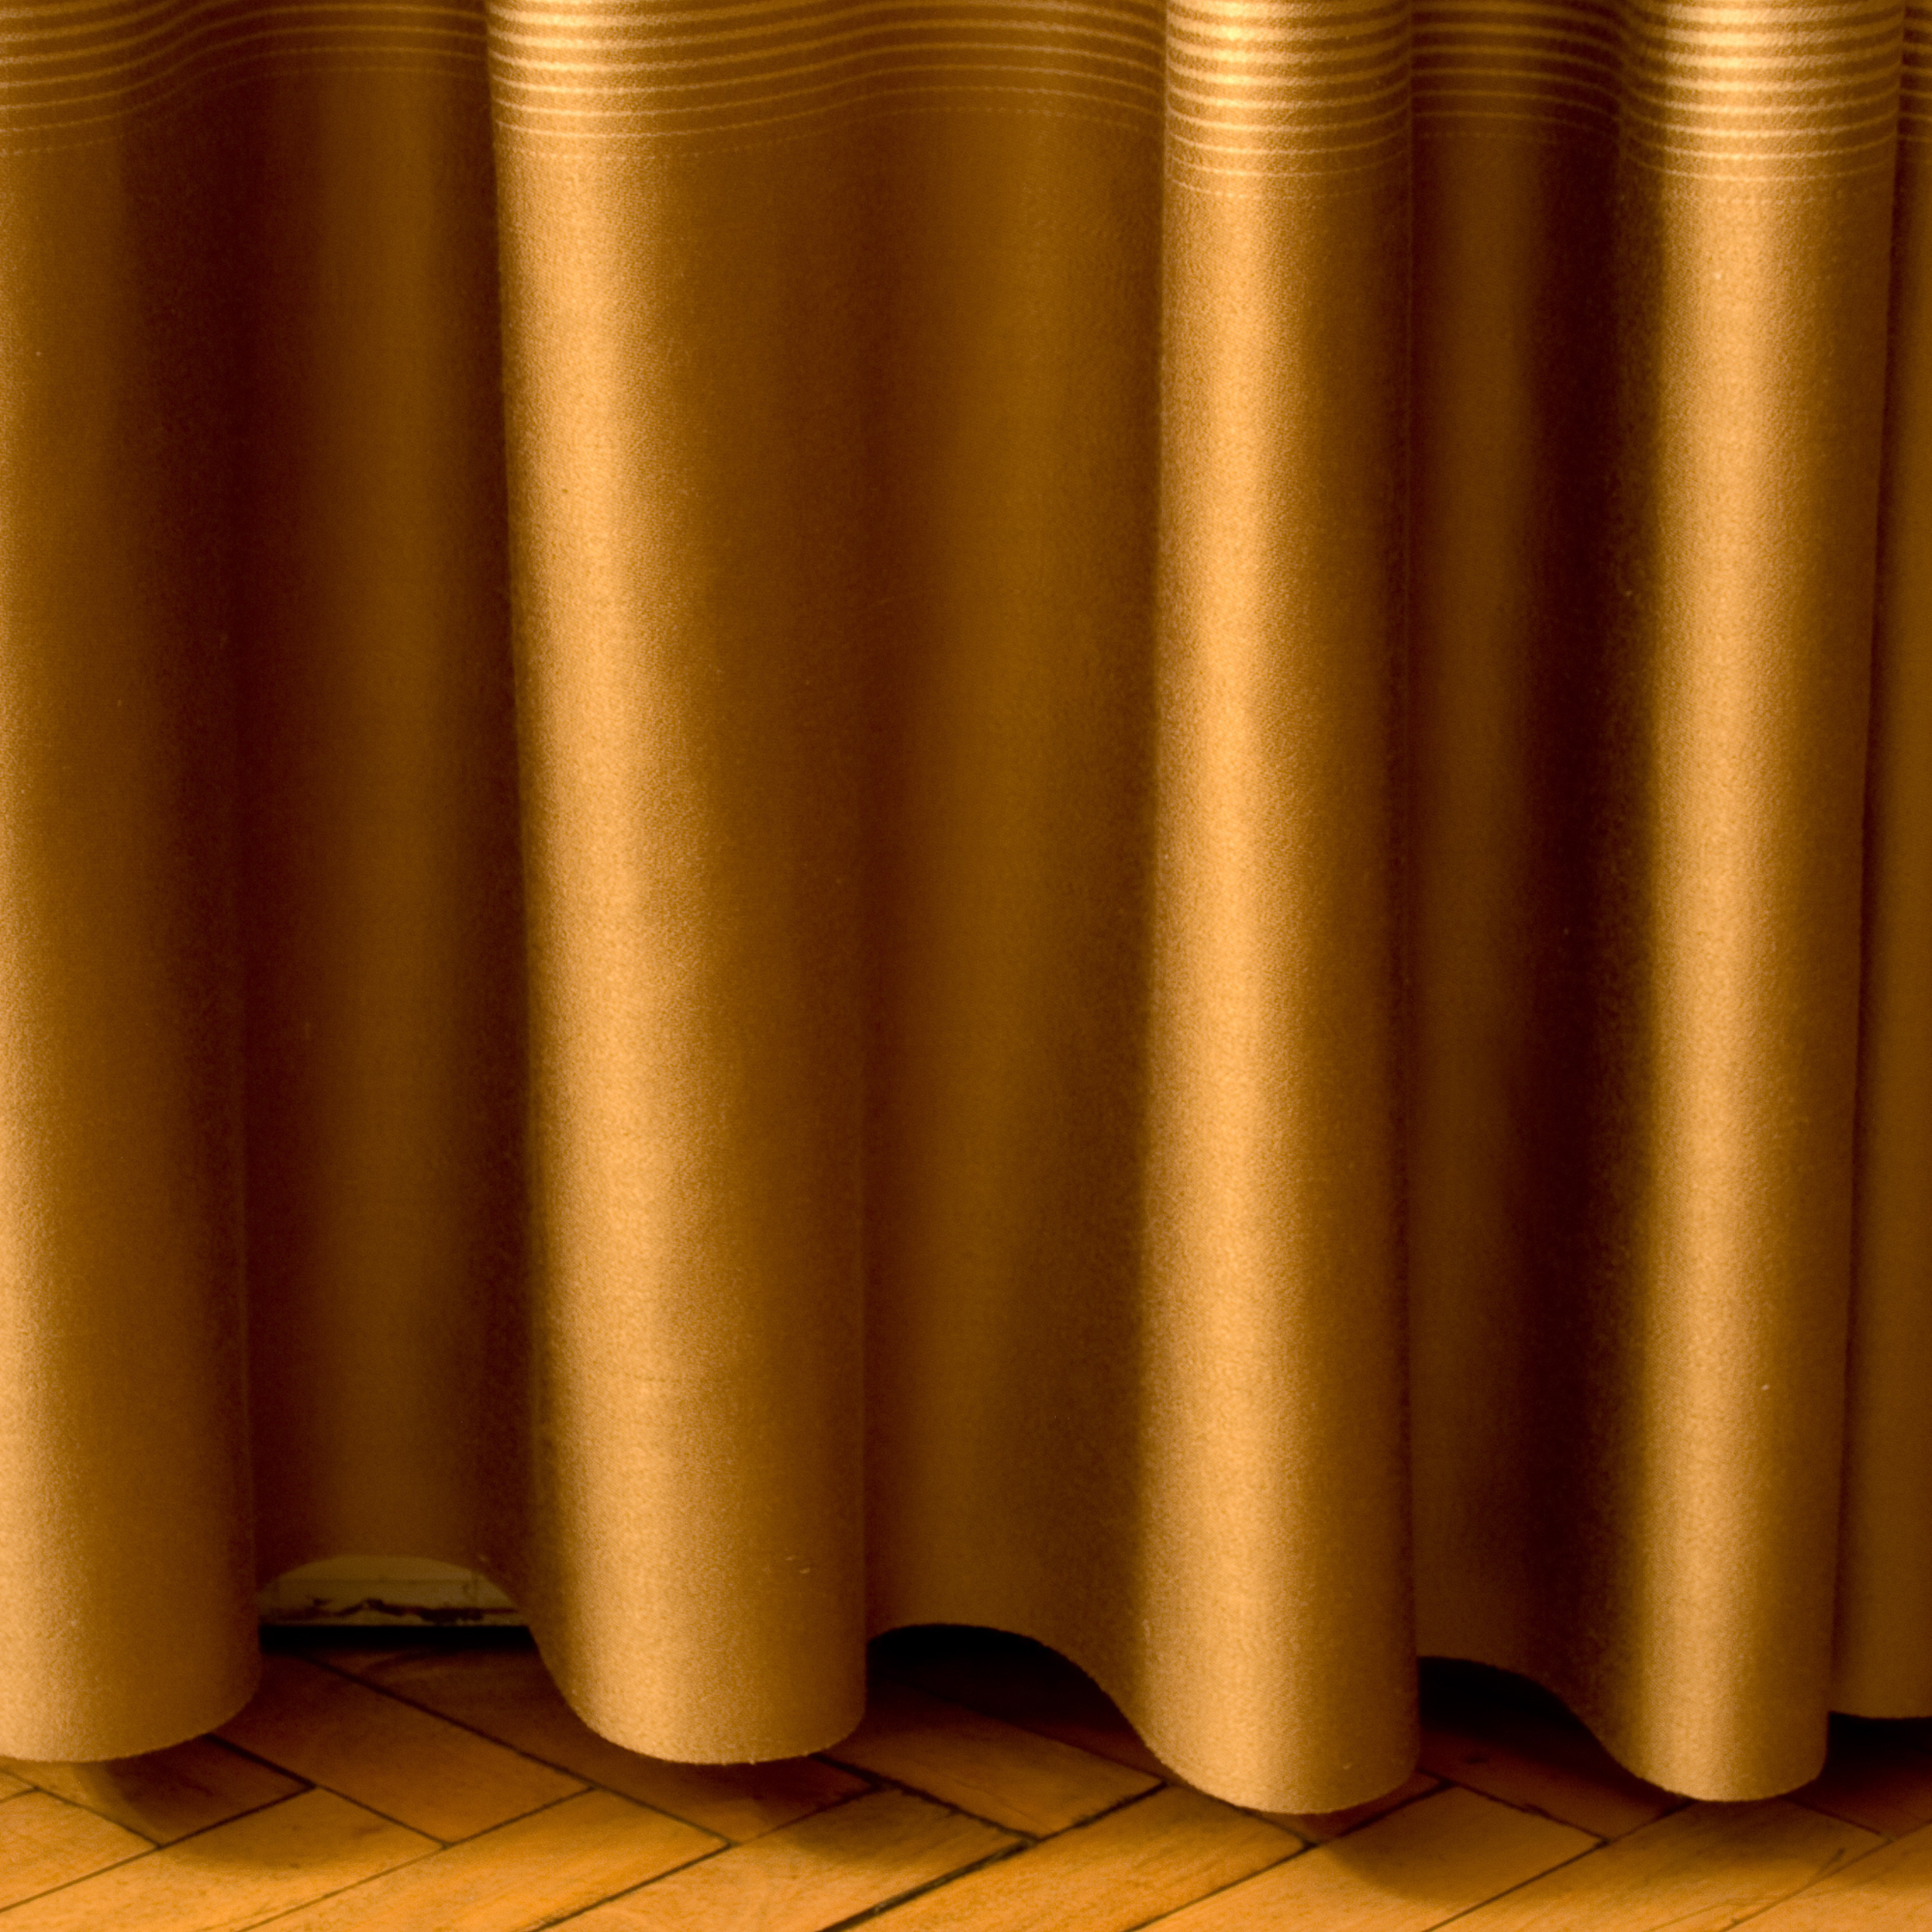 Curtain Materials